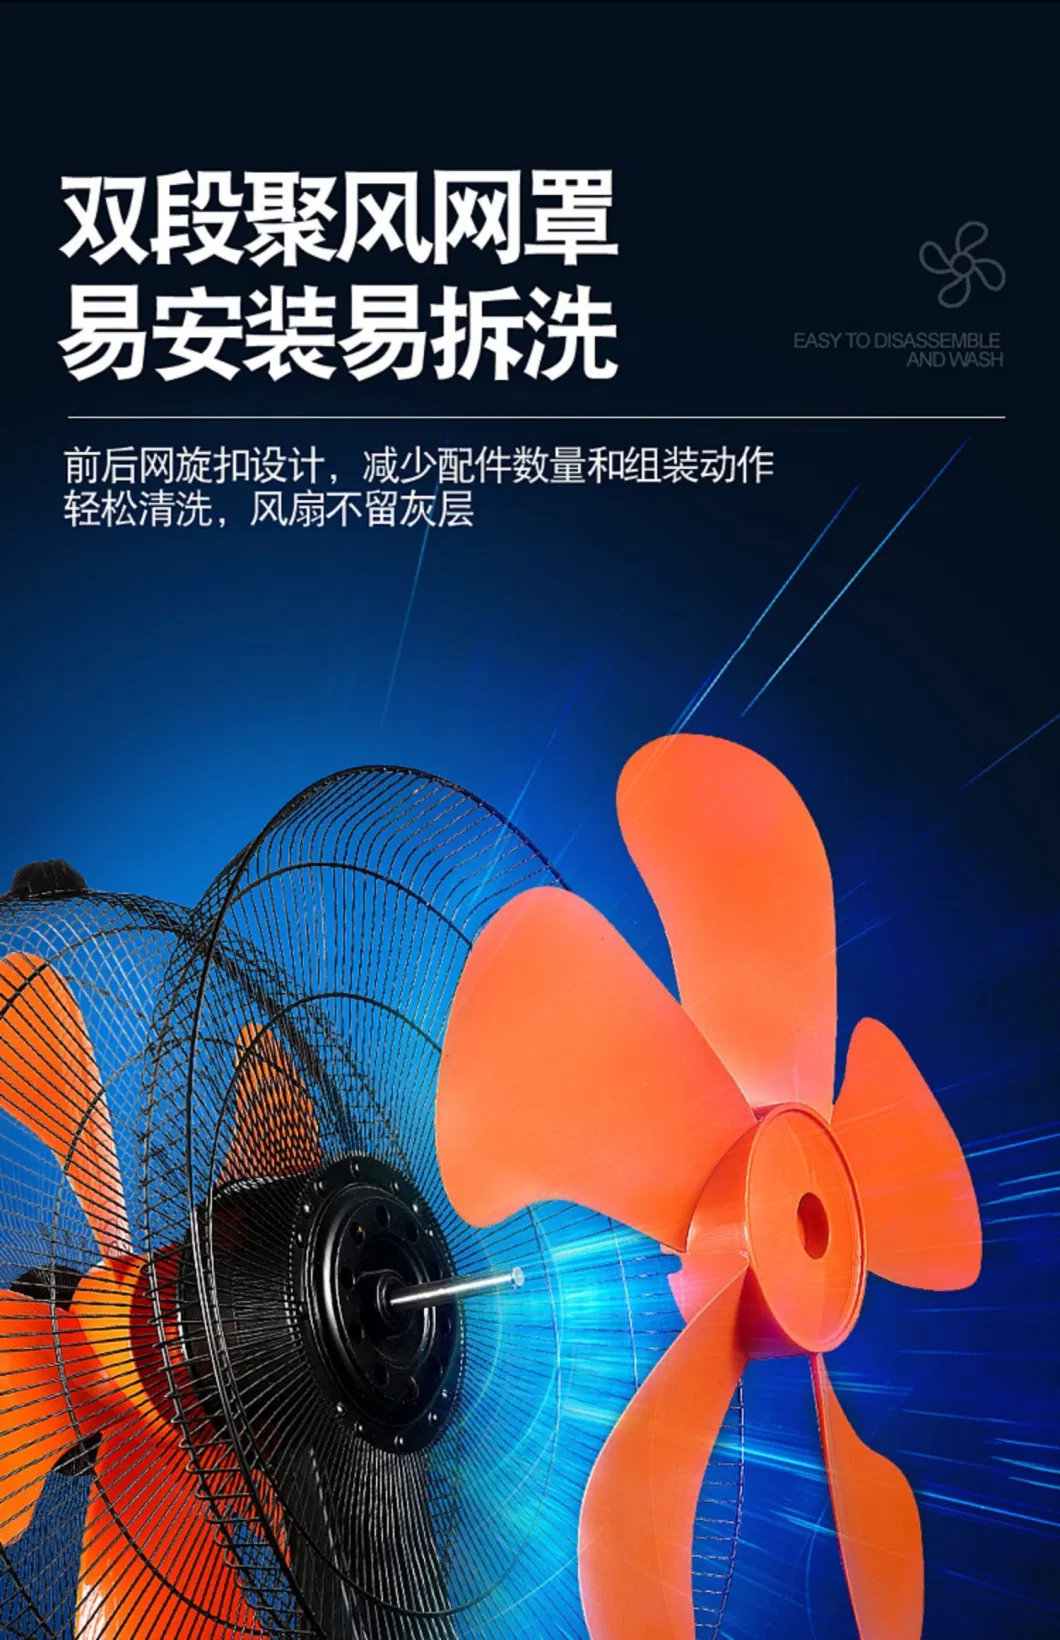 Dual Heads Stand Fan with 360 Degree Oscillation Electrical Fan Exhaust Fan, Rechargeable Fan, Household Mist Fan, Handheld Fan, Air Circulator Fan.